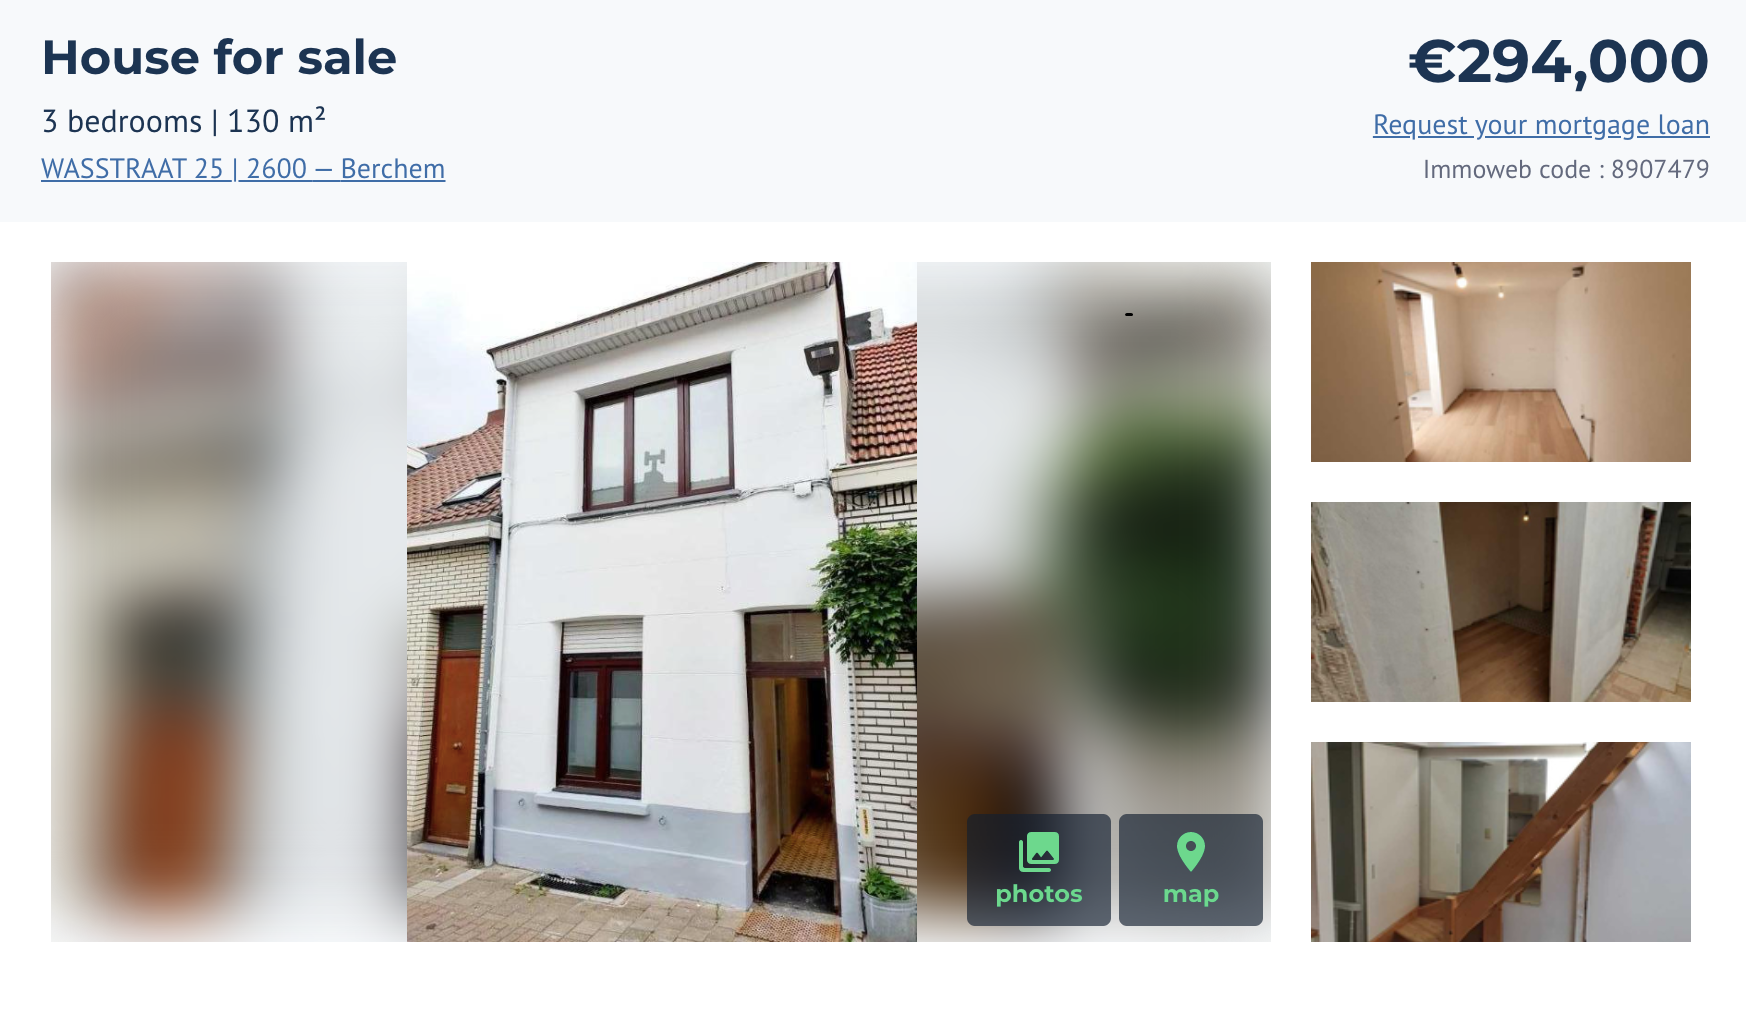 Небольшой дом с тремя спальнями и гостиной общей площадью 130 м² в нашем районе Берхем — это южная часть Антверпена. Дом стоит 294 000 €